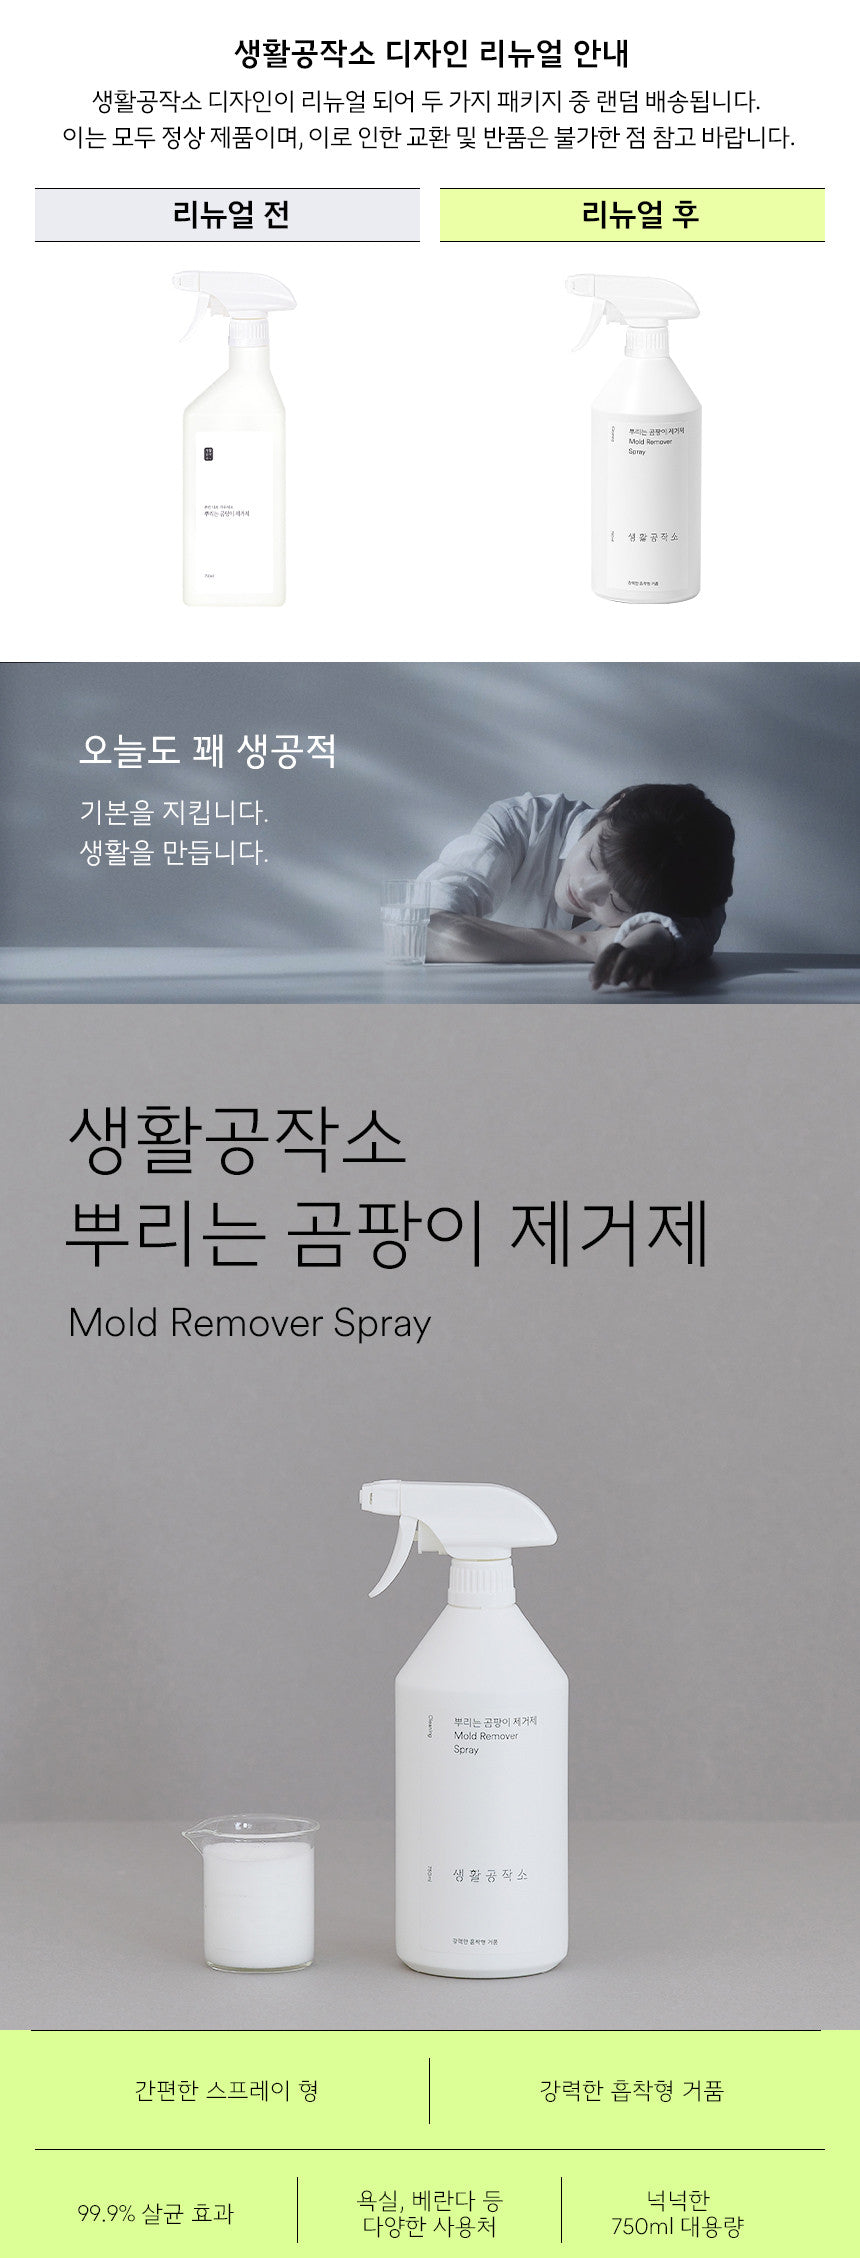 mold_remover_spray_desc_1